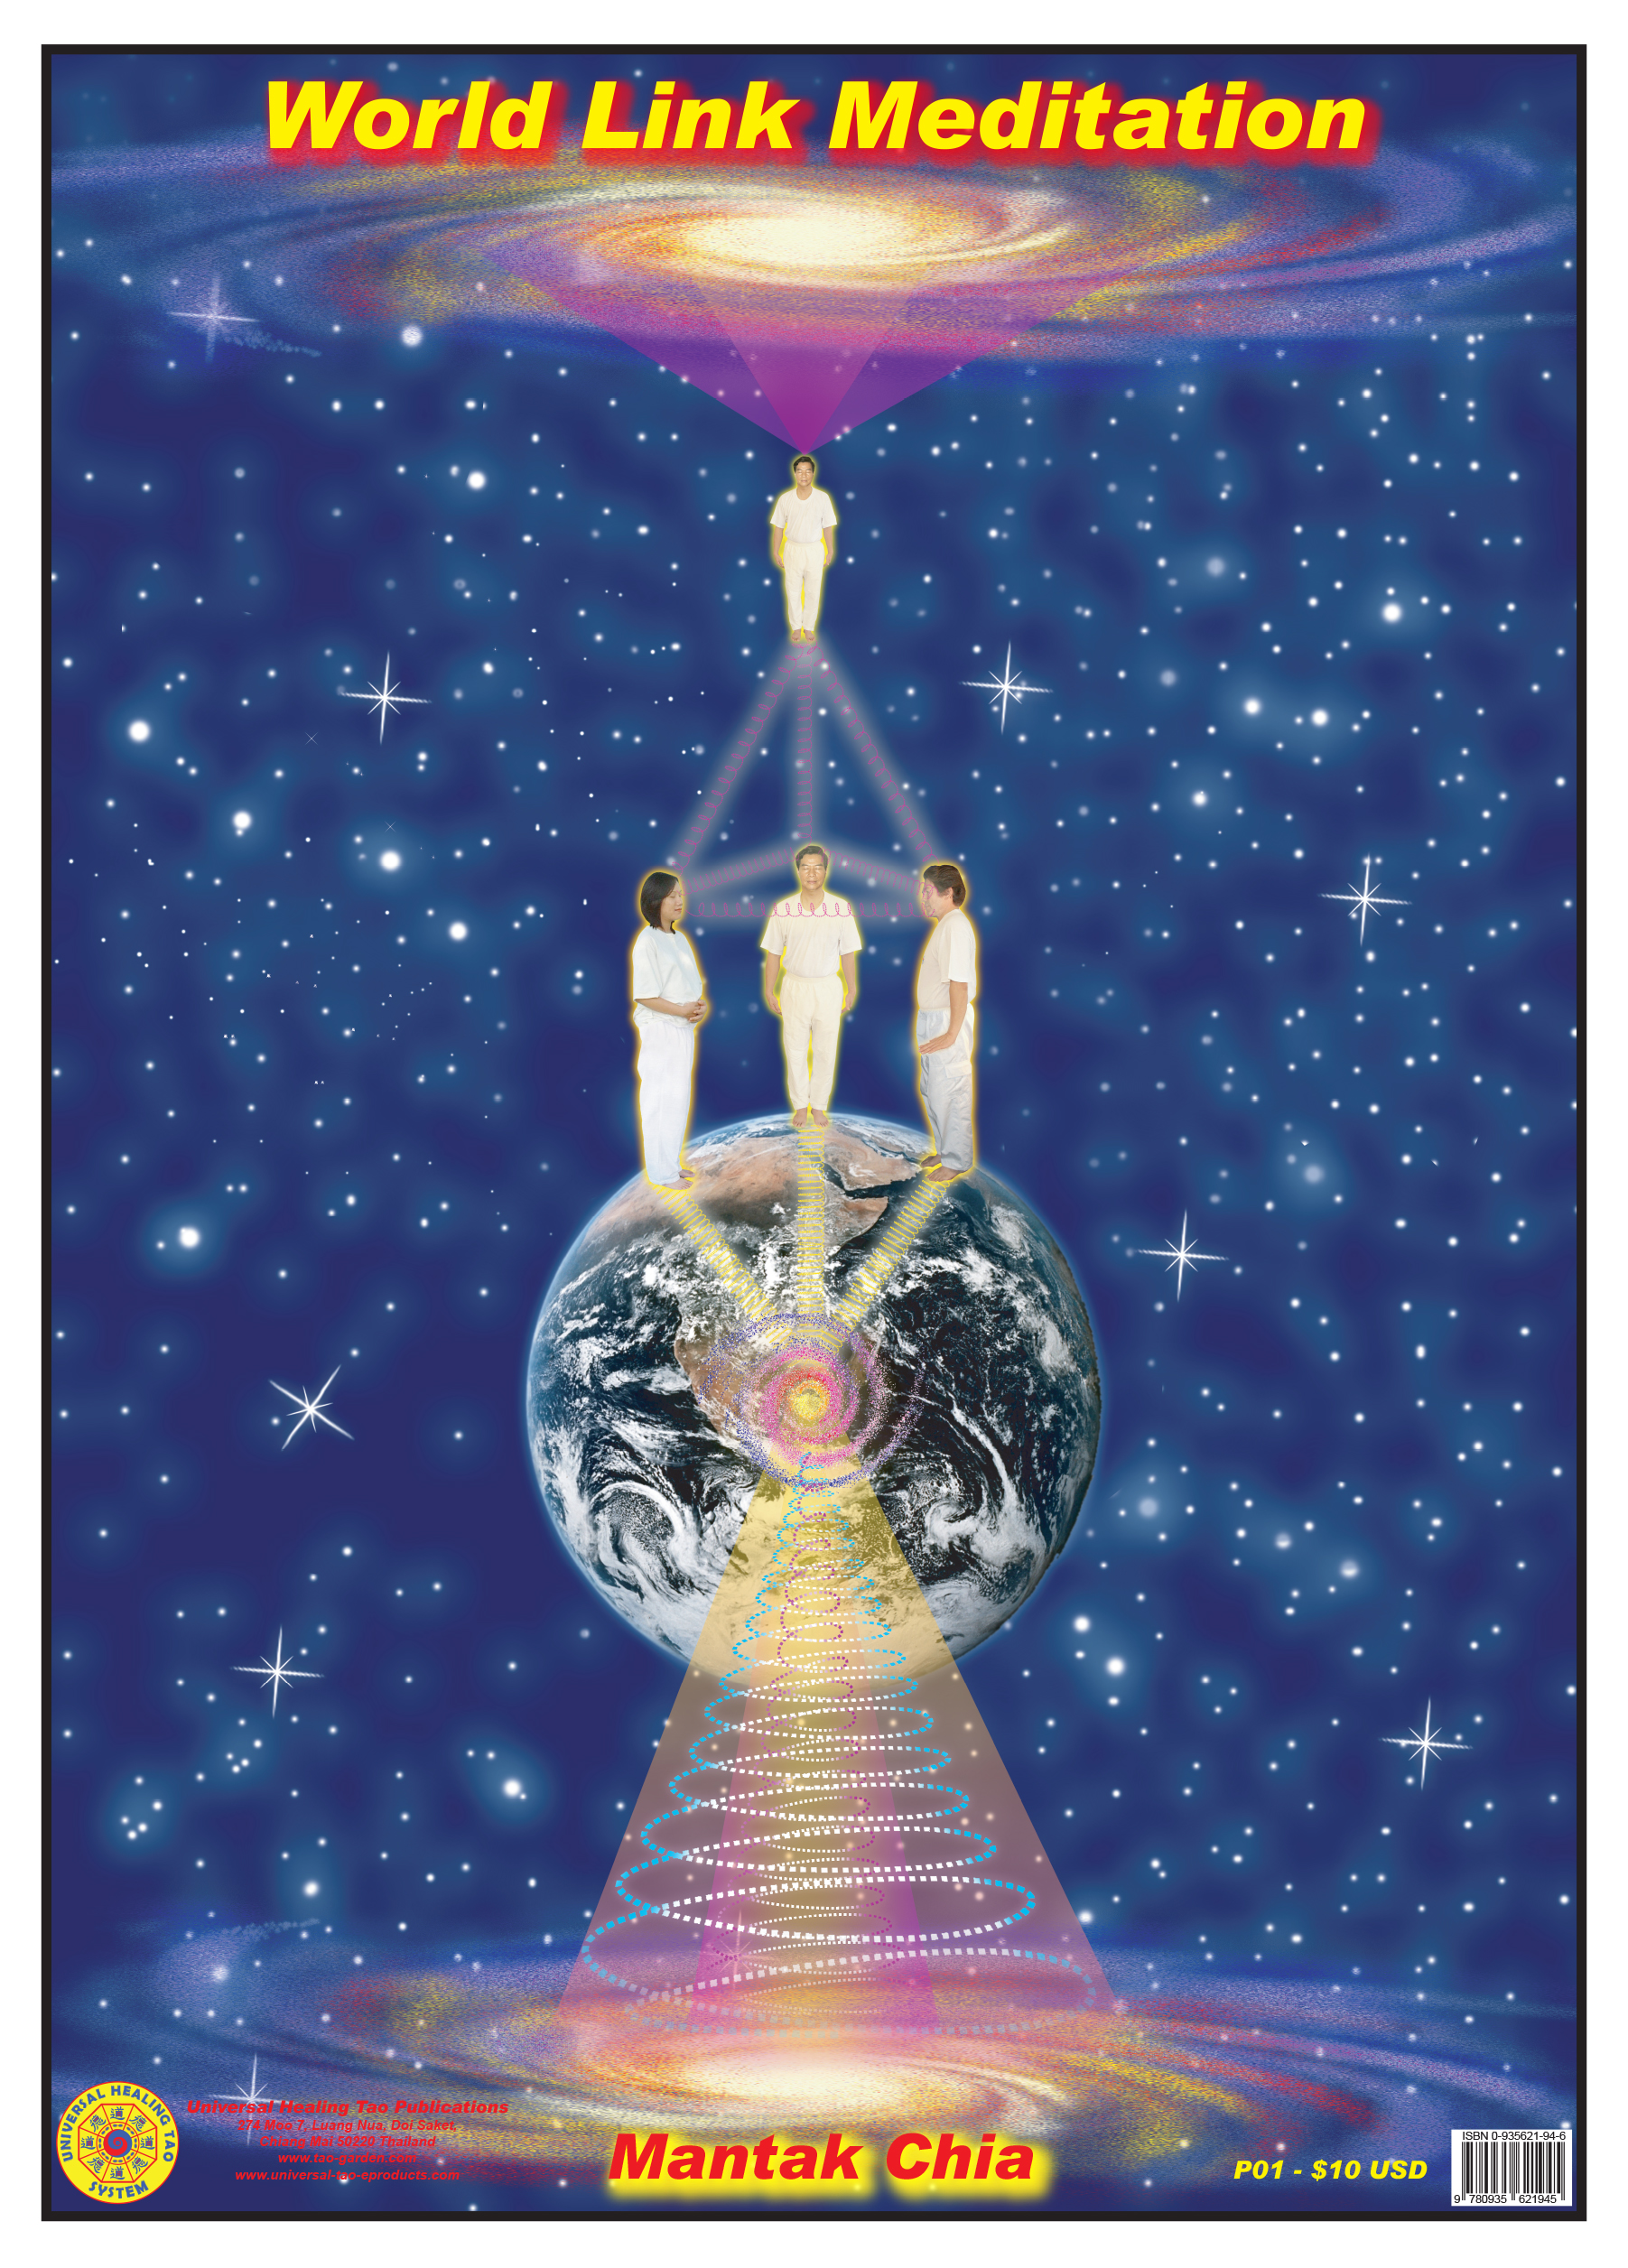 World Link Meditation (E-Poster) [DL-P01]